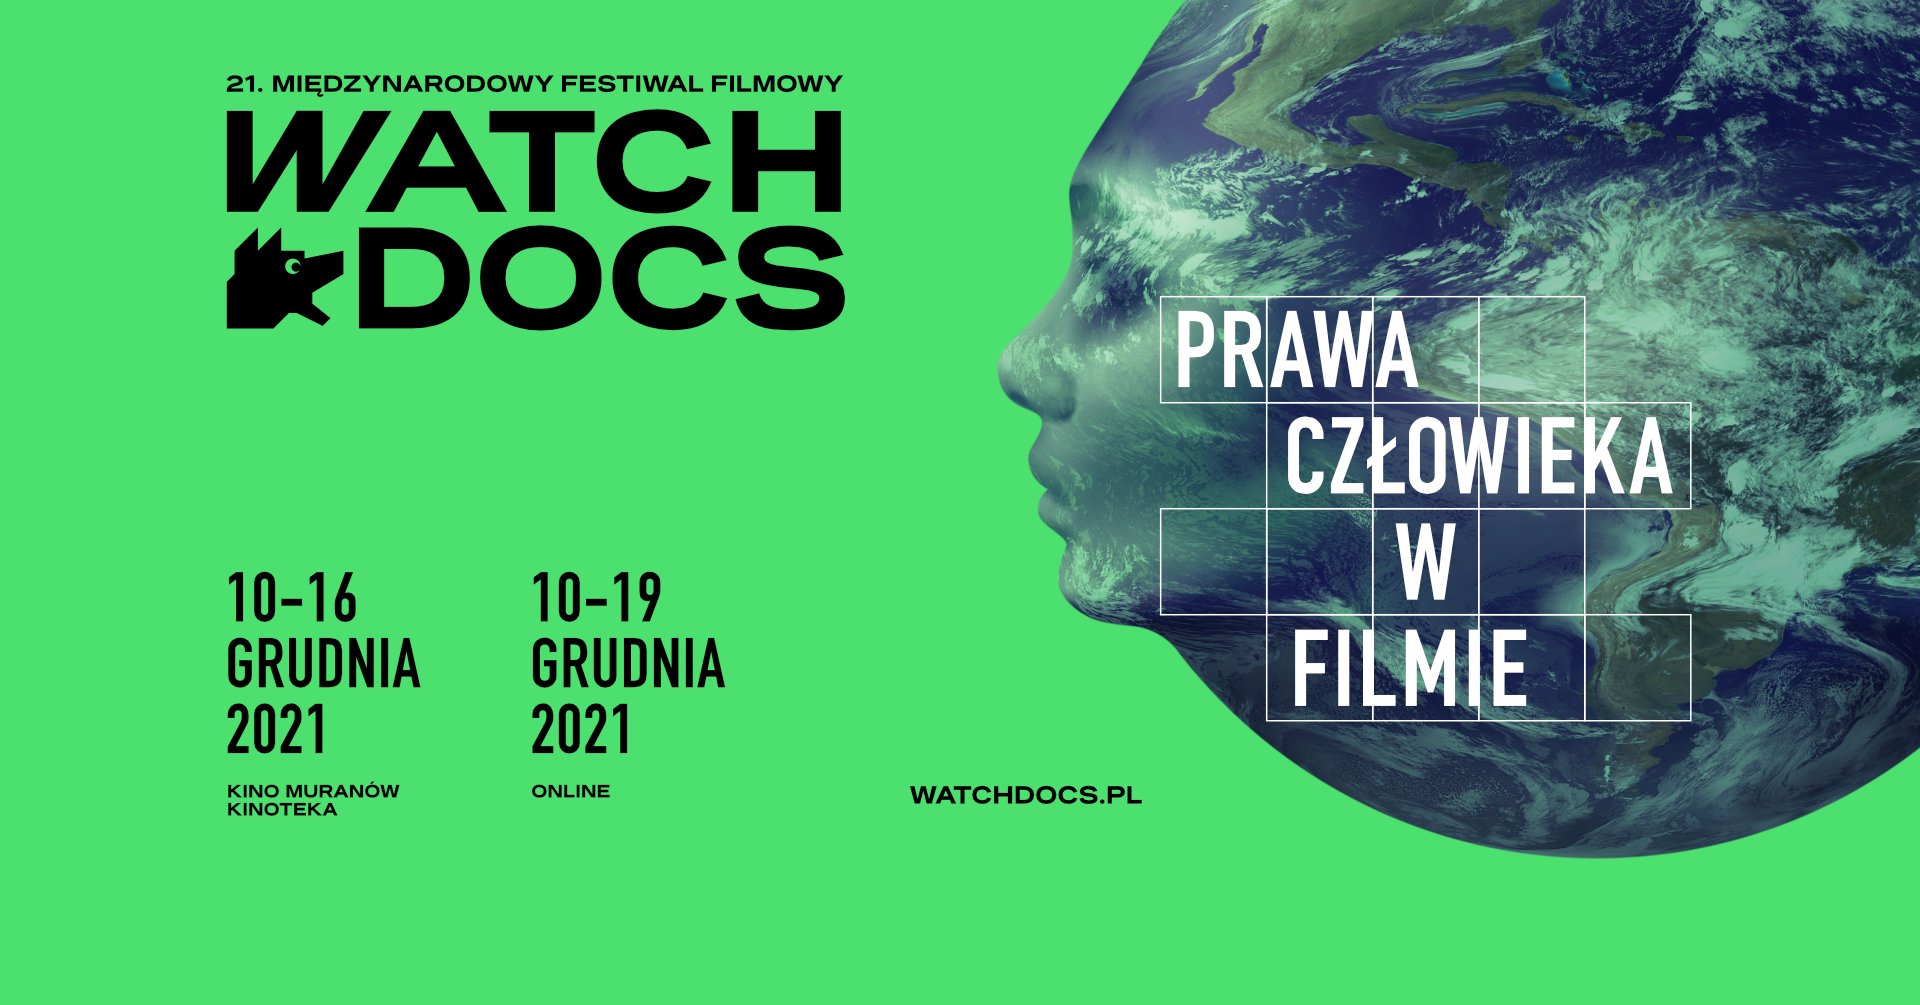 21. Międzynarodowy Festiwal Filmowy WATCH DOCS – zapowiedź